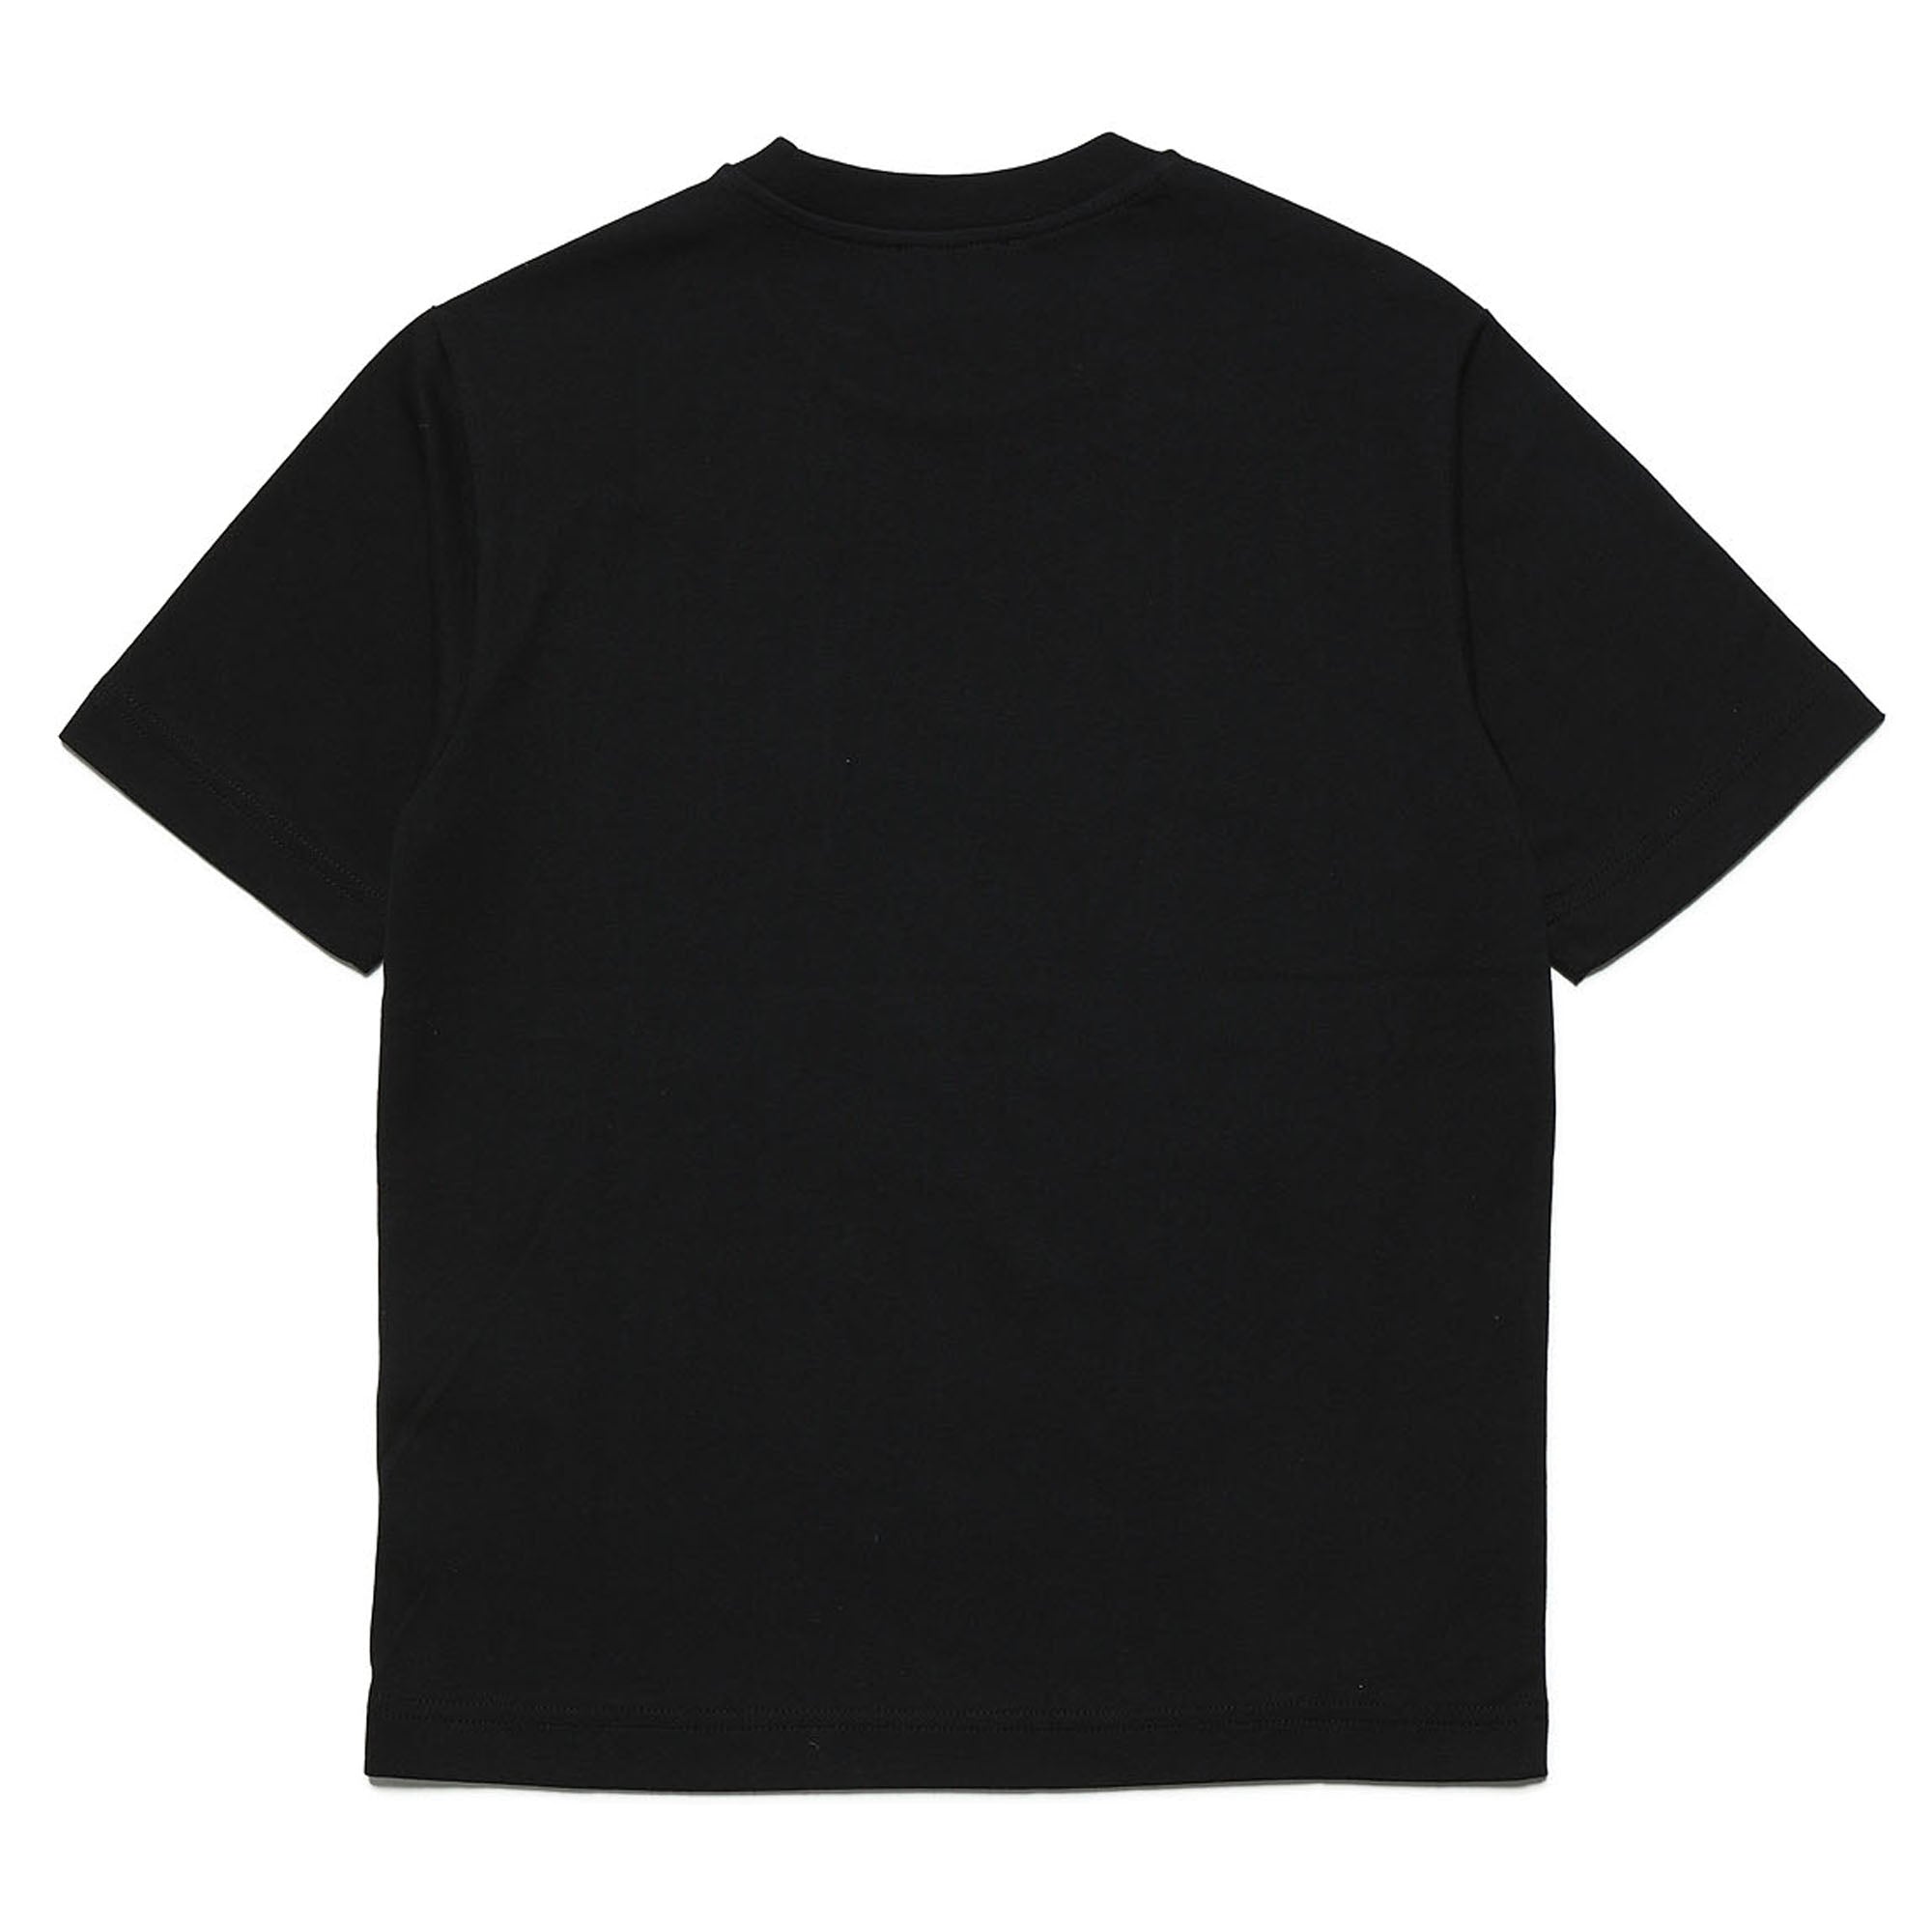 Diesel Black T-Shirt